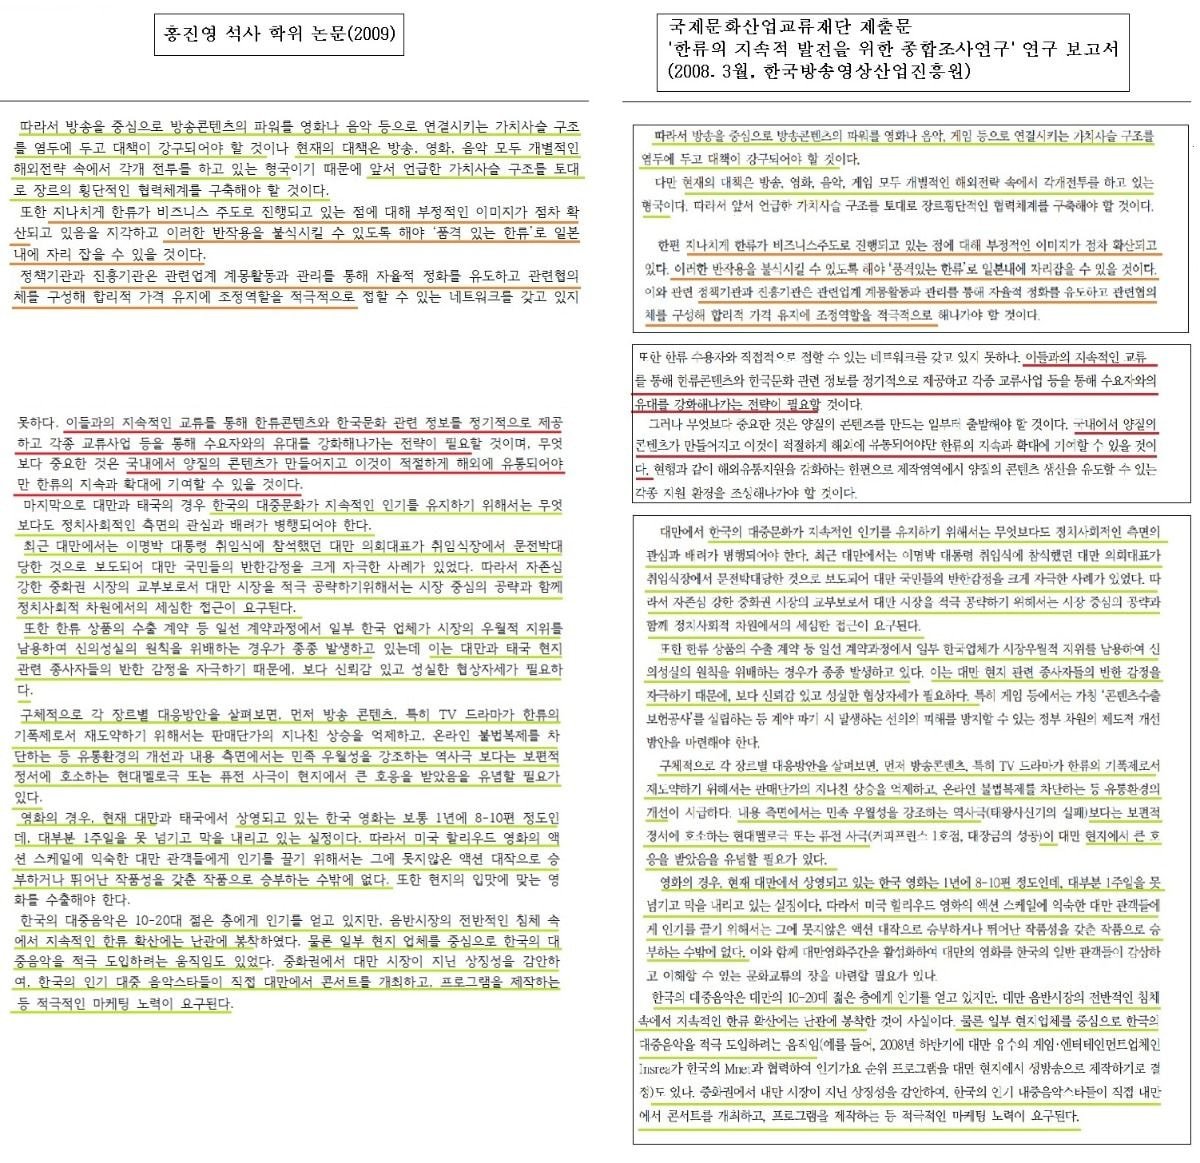 홍진영이 표절한 논문